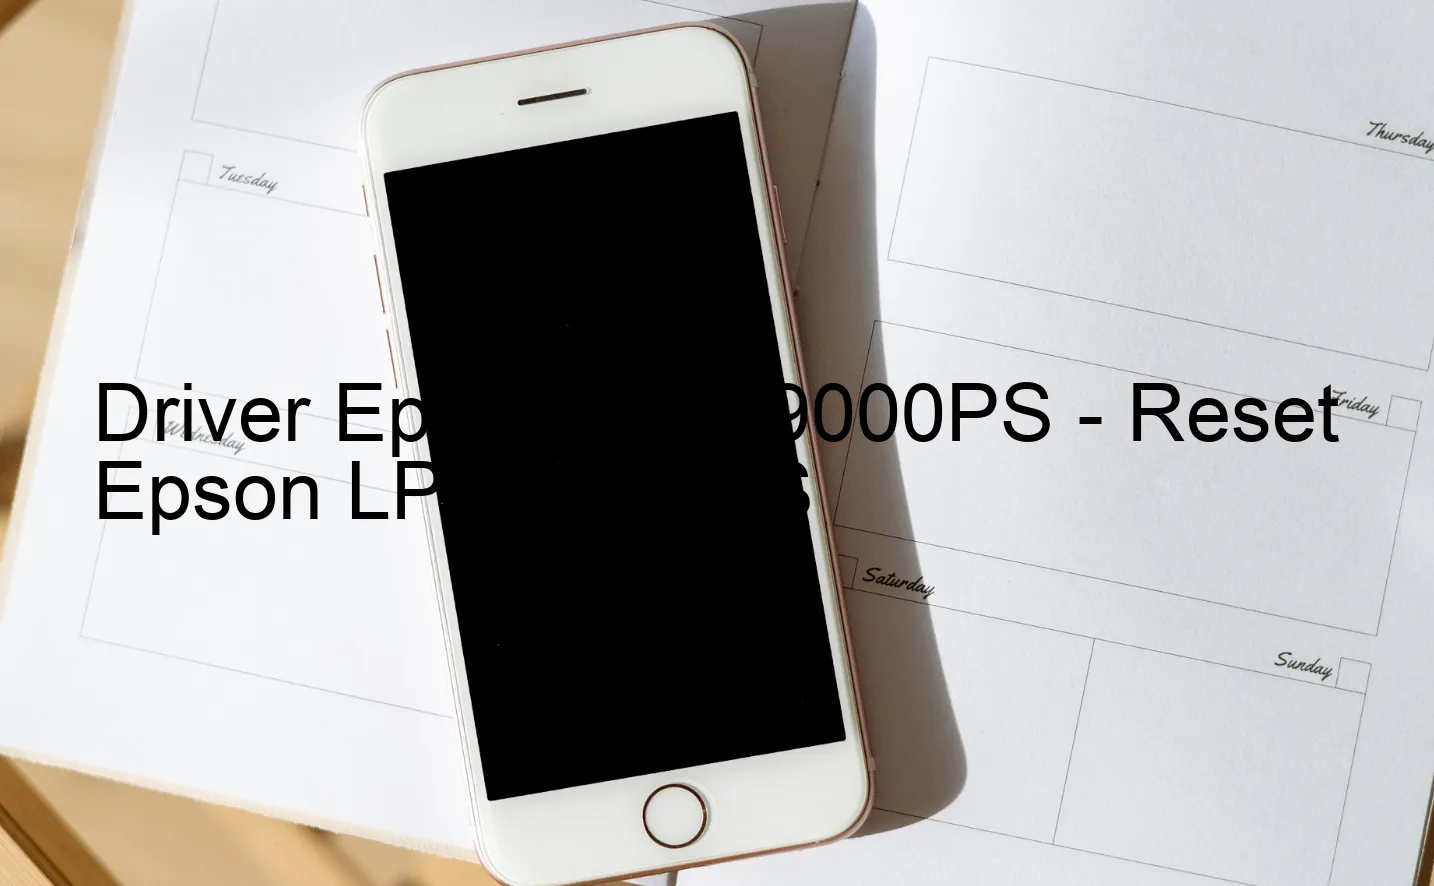 Epson LP-S9000PSのドライバー、Epson LP-S9000PSのリセットソフトウェア